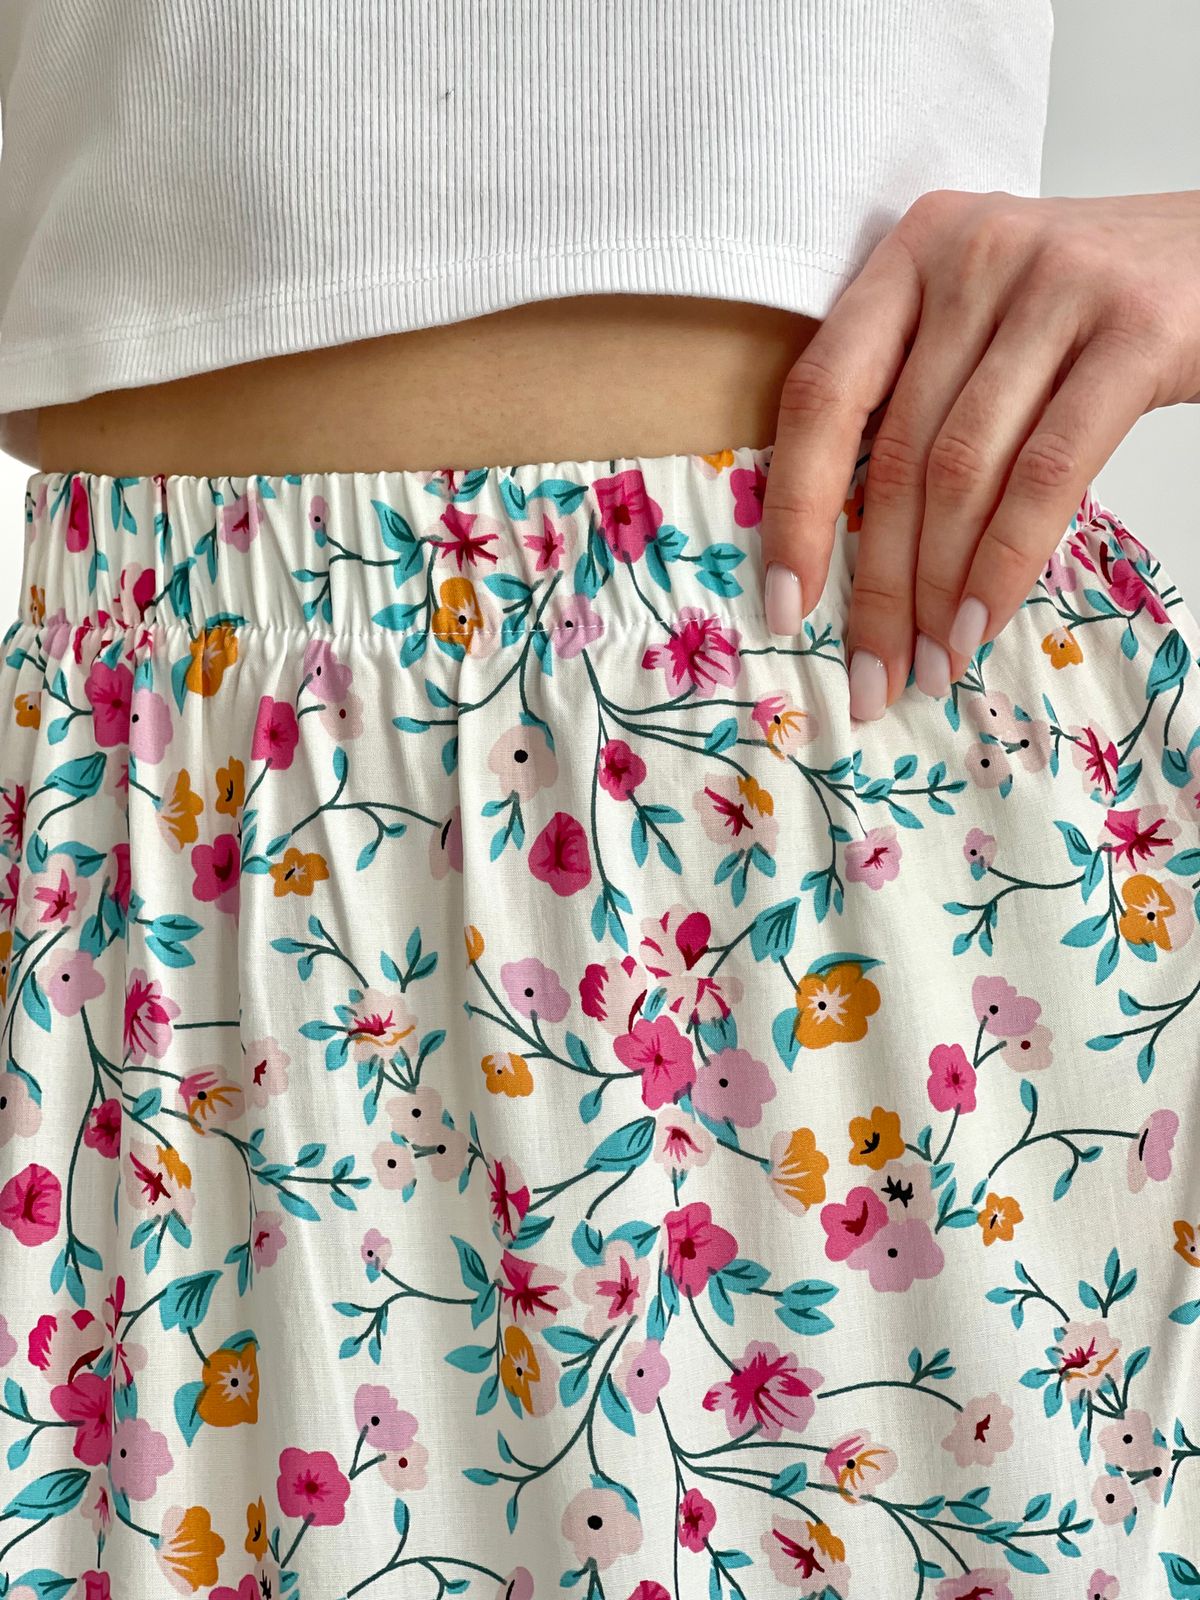 Купить Длинная женская юбка с разрезом в цветочек белая Merlini Лакко 400001262 размер 42-44 (S-M) в интернет-магазине